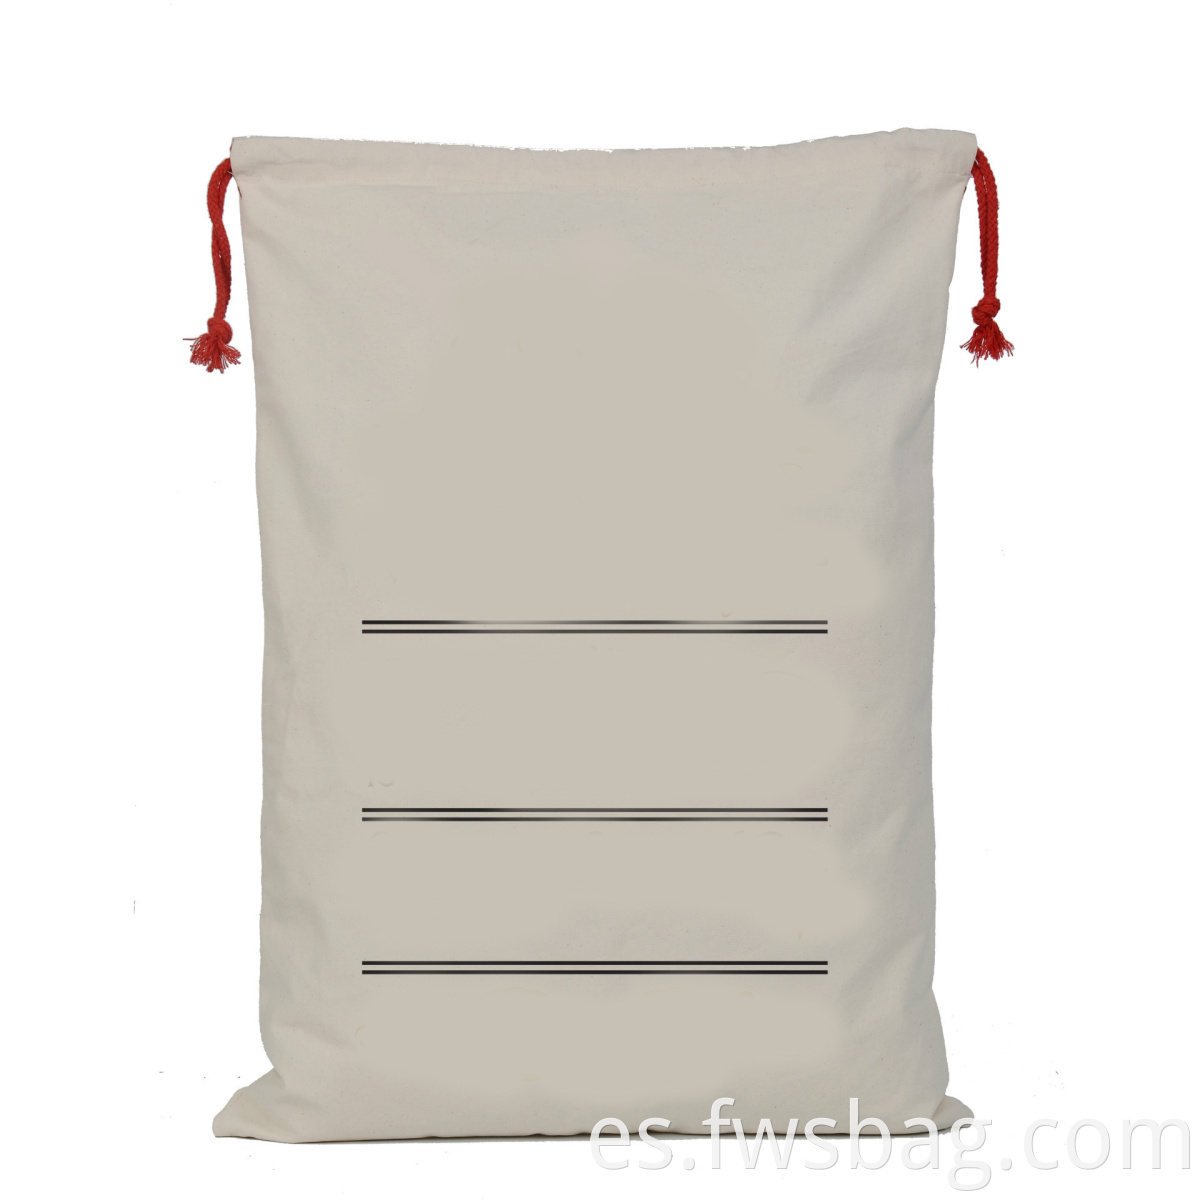 Nuevo diseño Santa sacos de santa sublimación de algodón de algodón Bolsa de Navidad